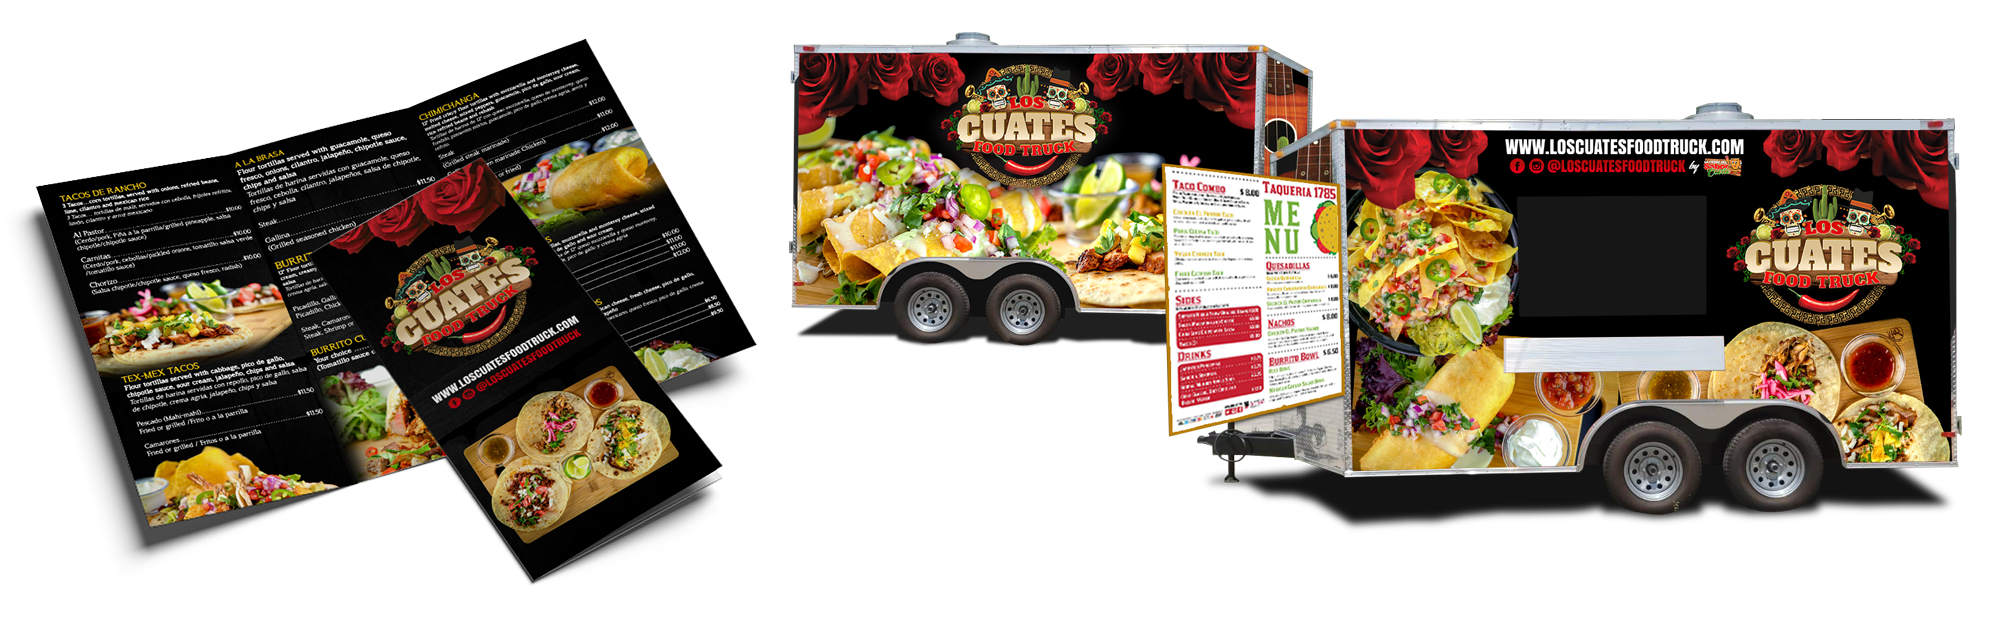 Los Cuates Food Truck